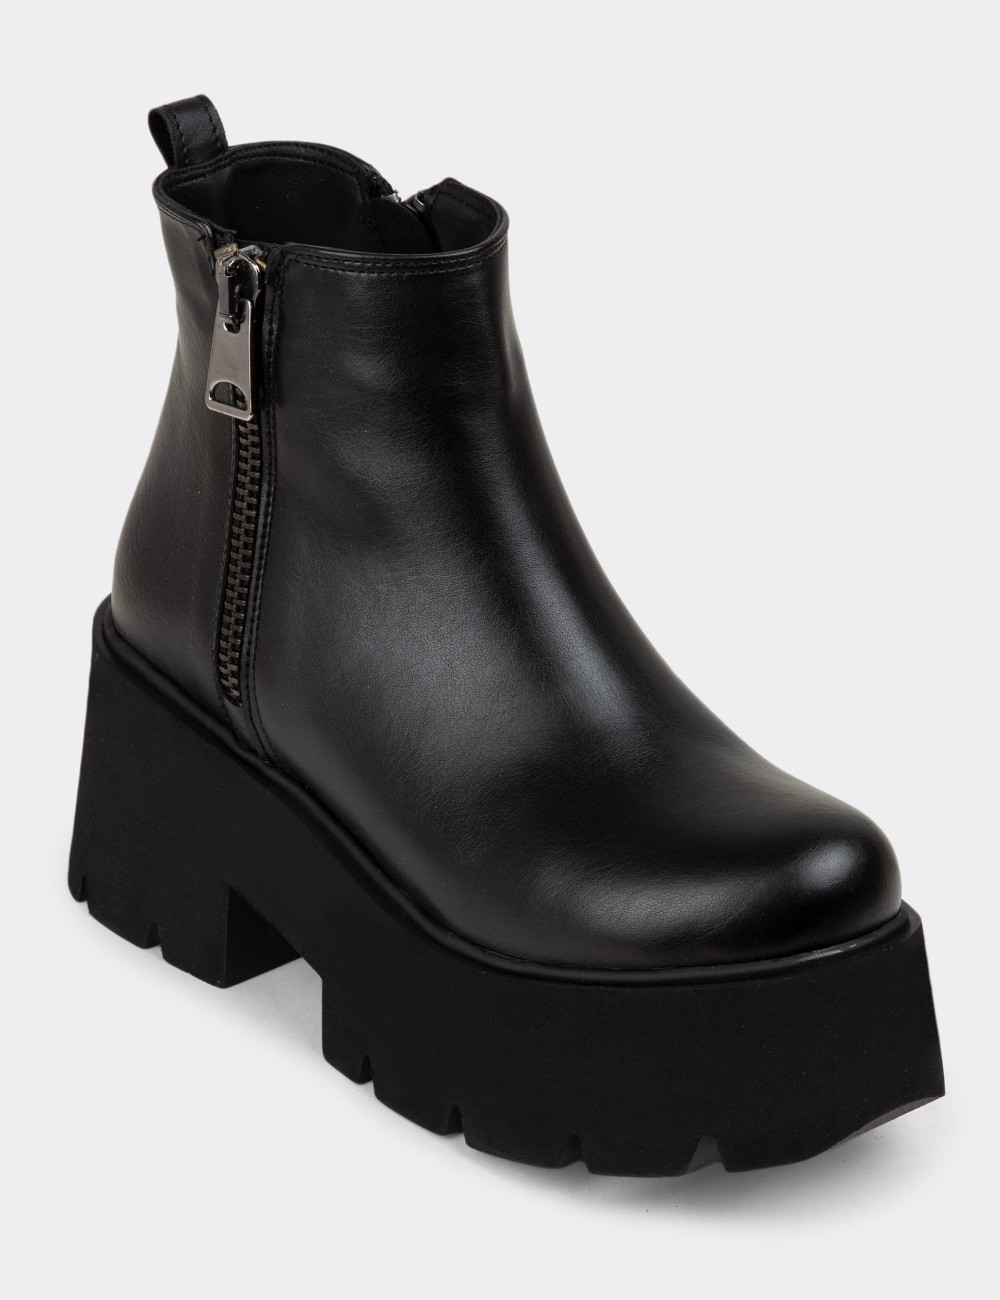 Black Boots - K1601ZSYHE02